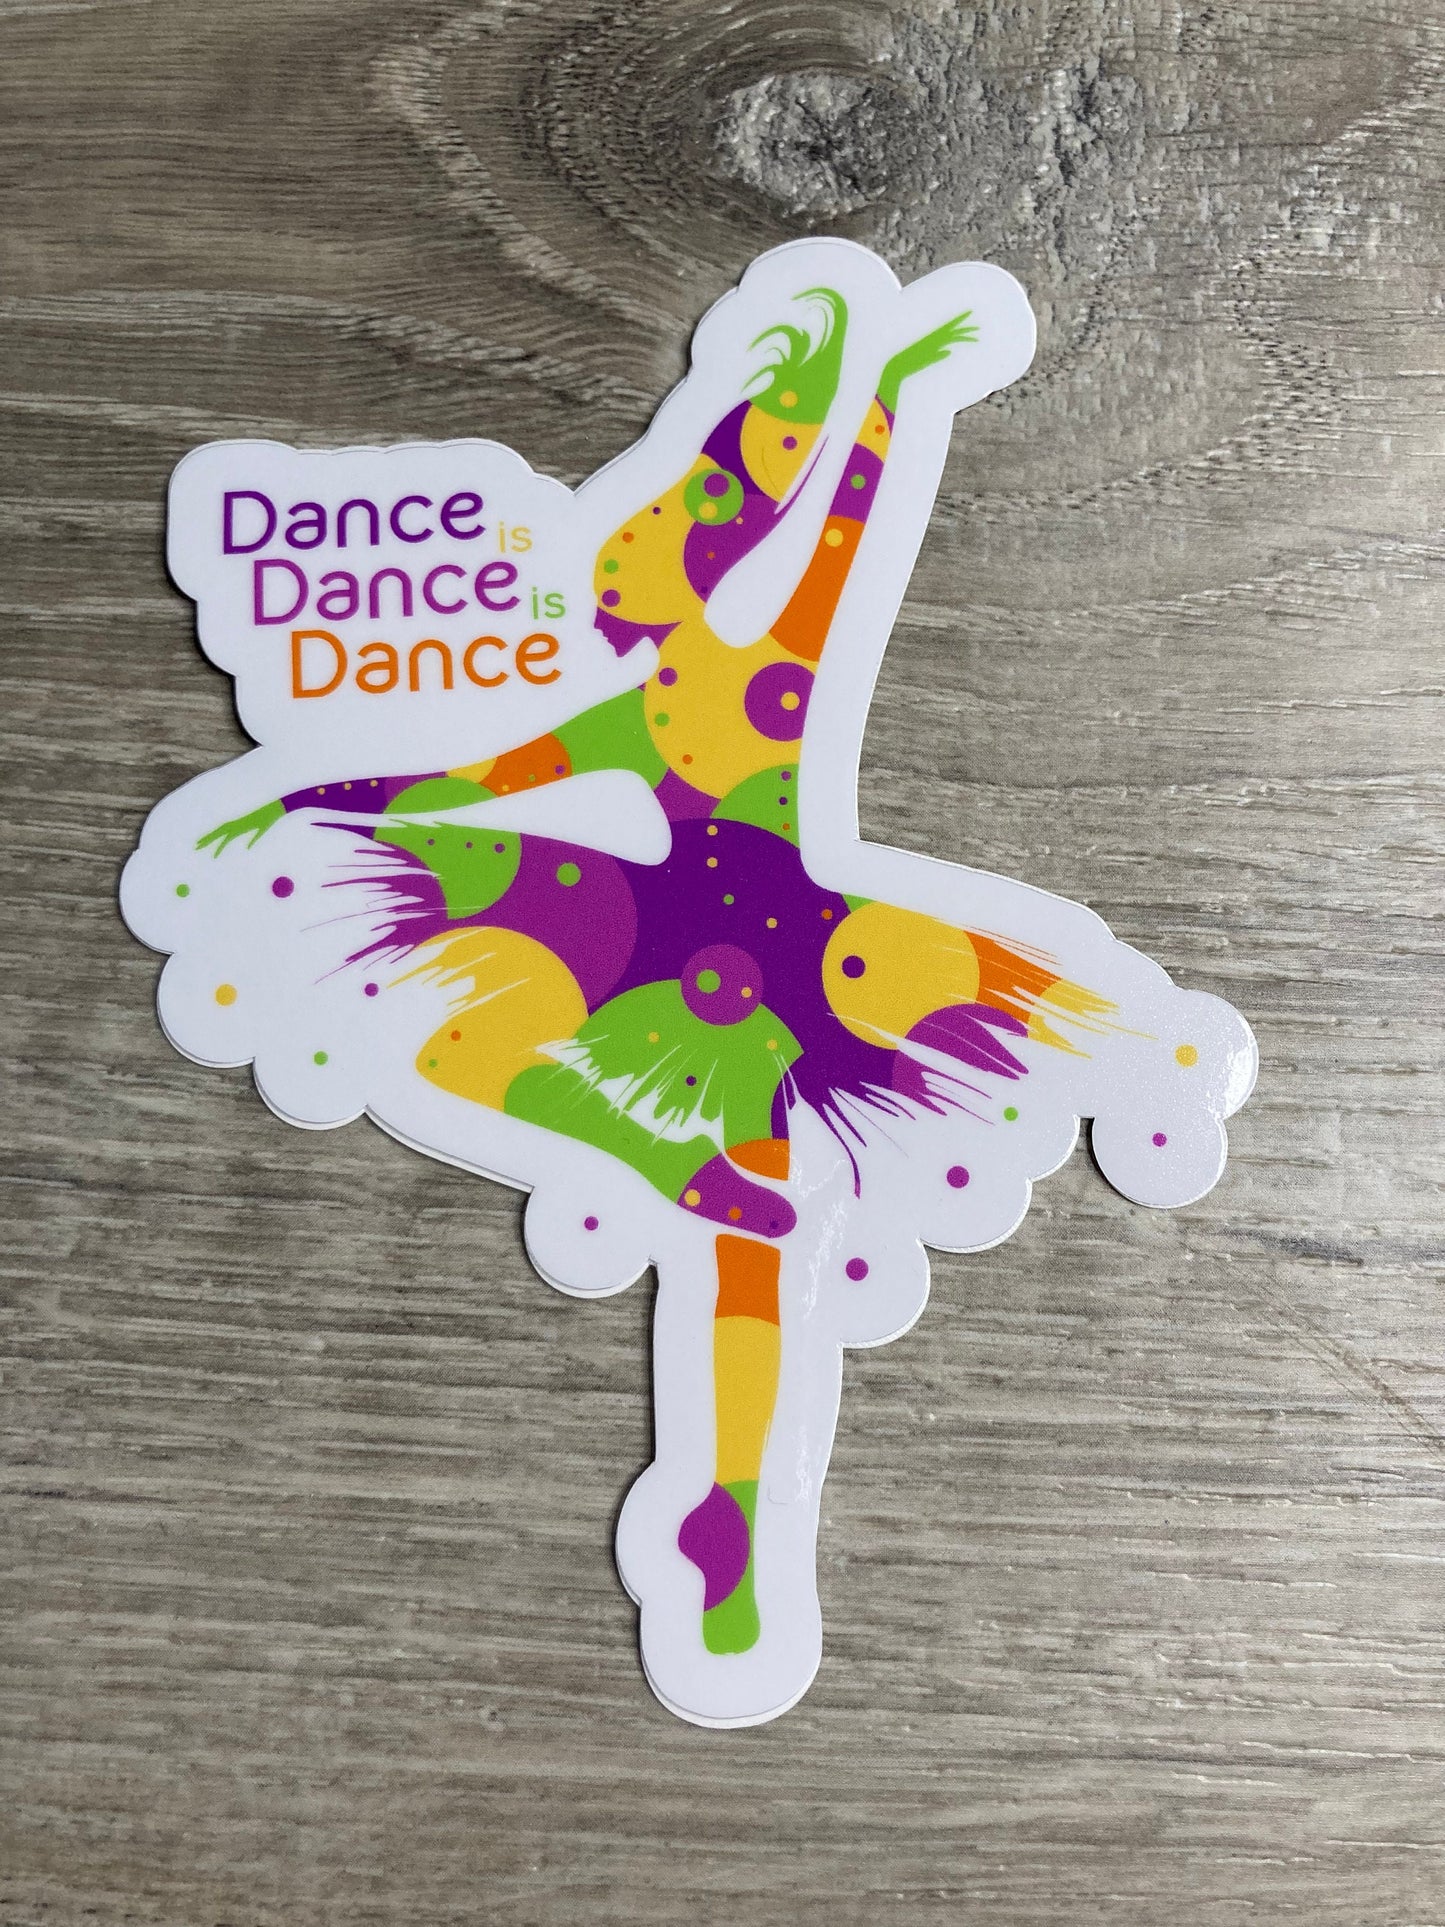 Dance Is Dance Is Dance Vinyl Sticker, Vinyl Decal, Laptop Sticker, Dance Sticker, Gifts For Dancers, Ballet Gift